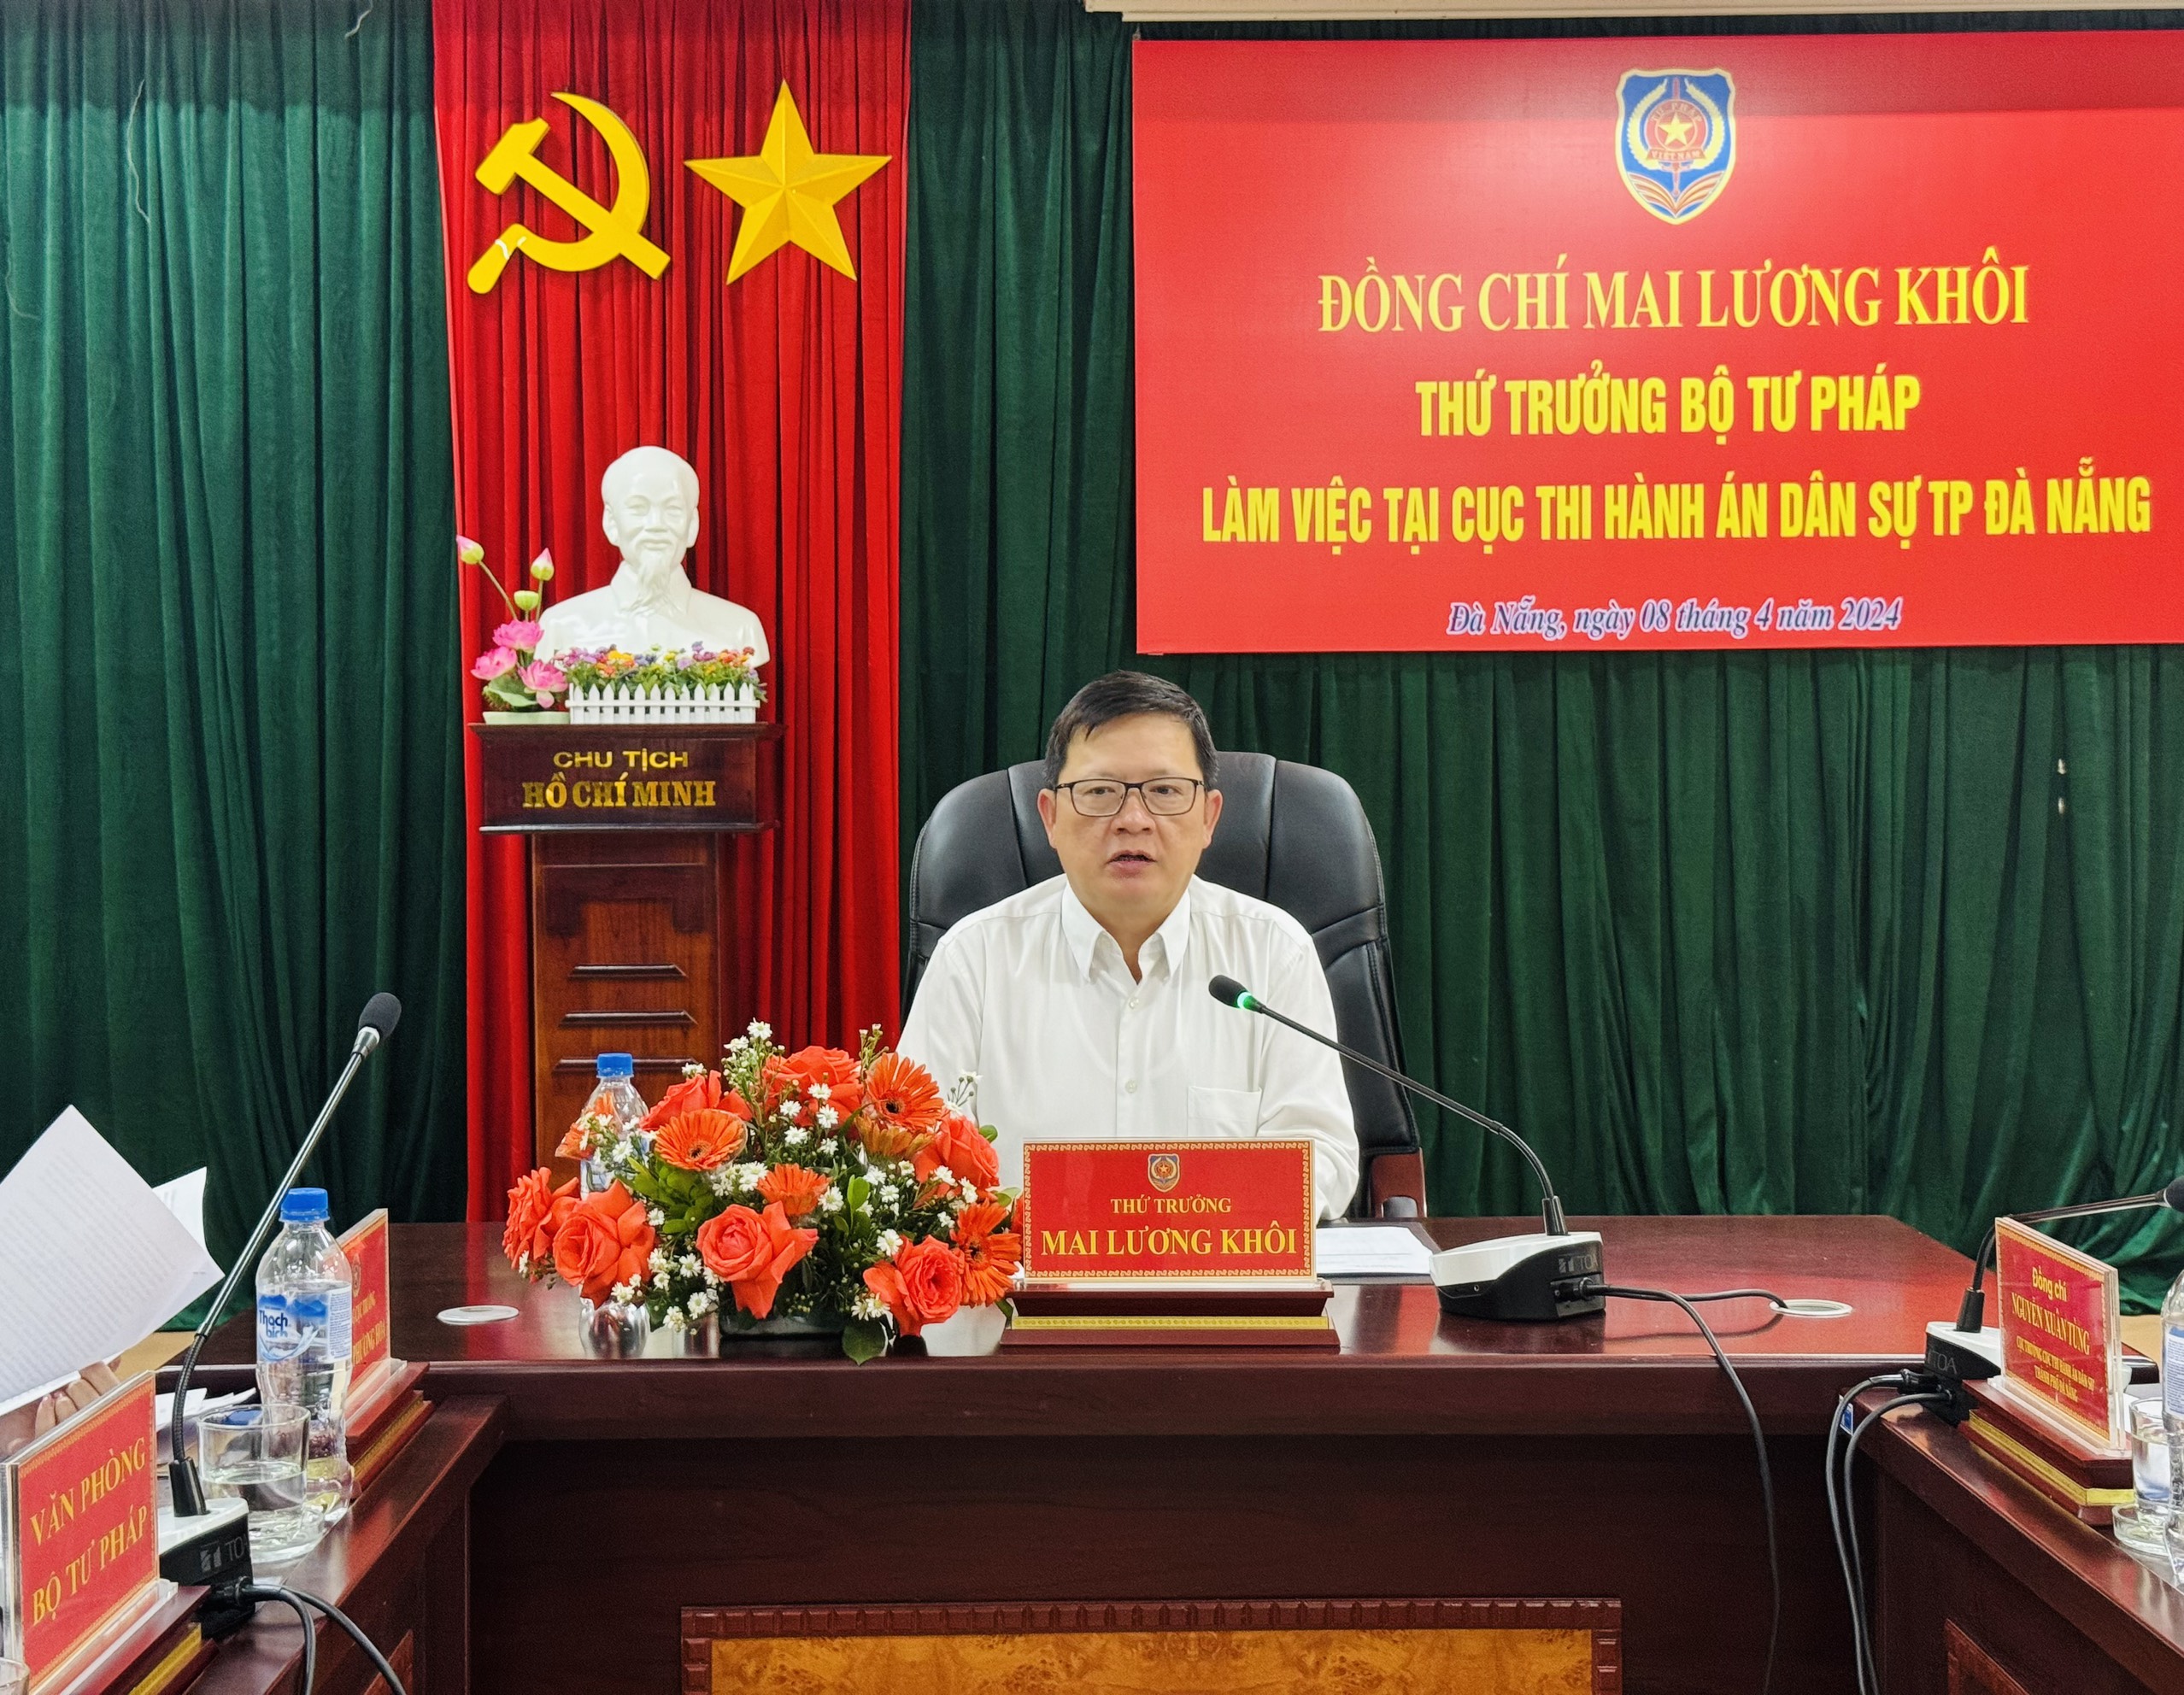 Thứ trưởng Bộ Tư pháp Mai Lương Khôi làm việc tại Cục Thi hành án dân sự thành phố Đà Nẵng